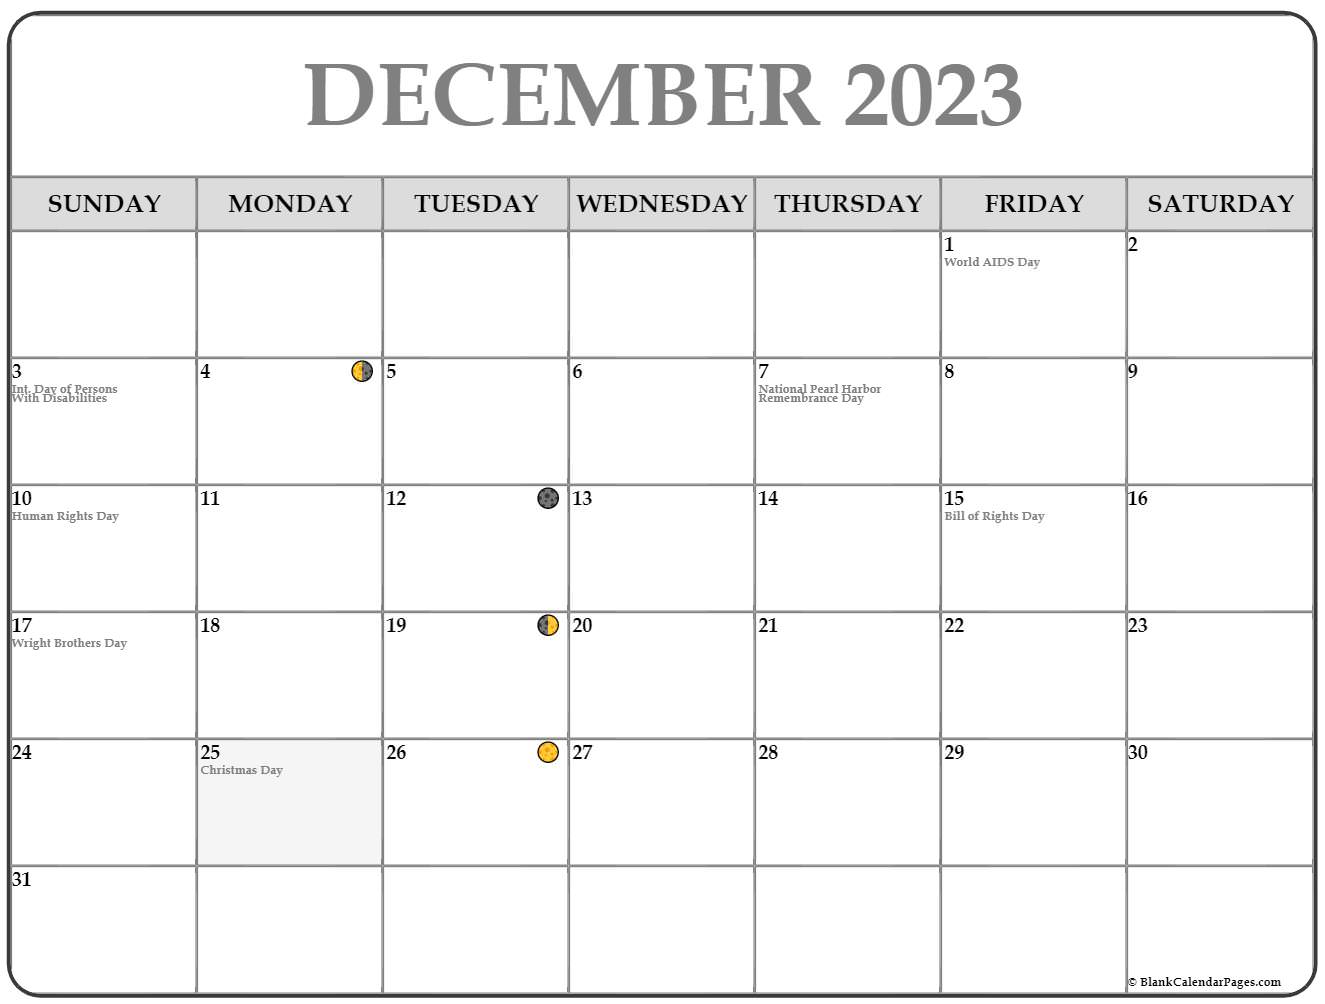 December 2023 Calendar Moon1 